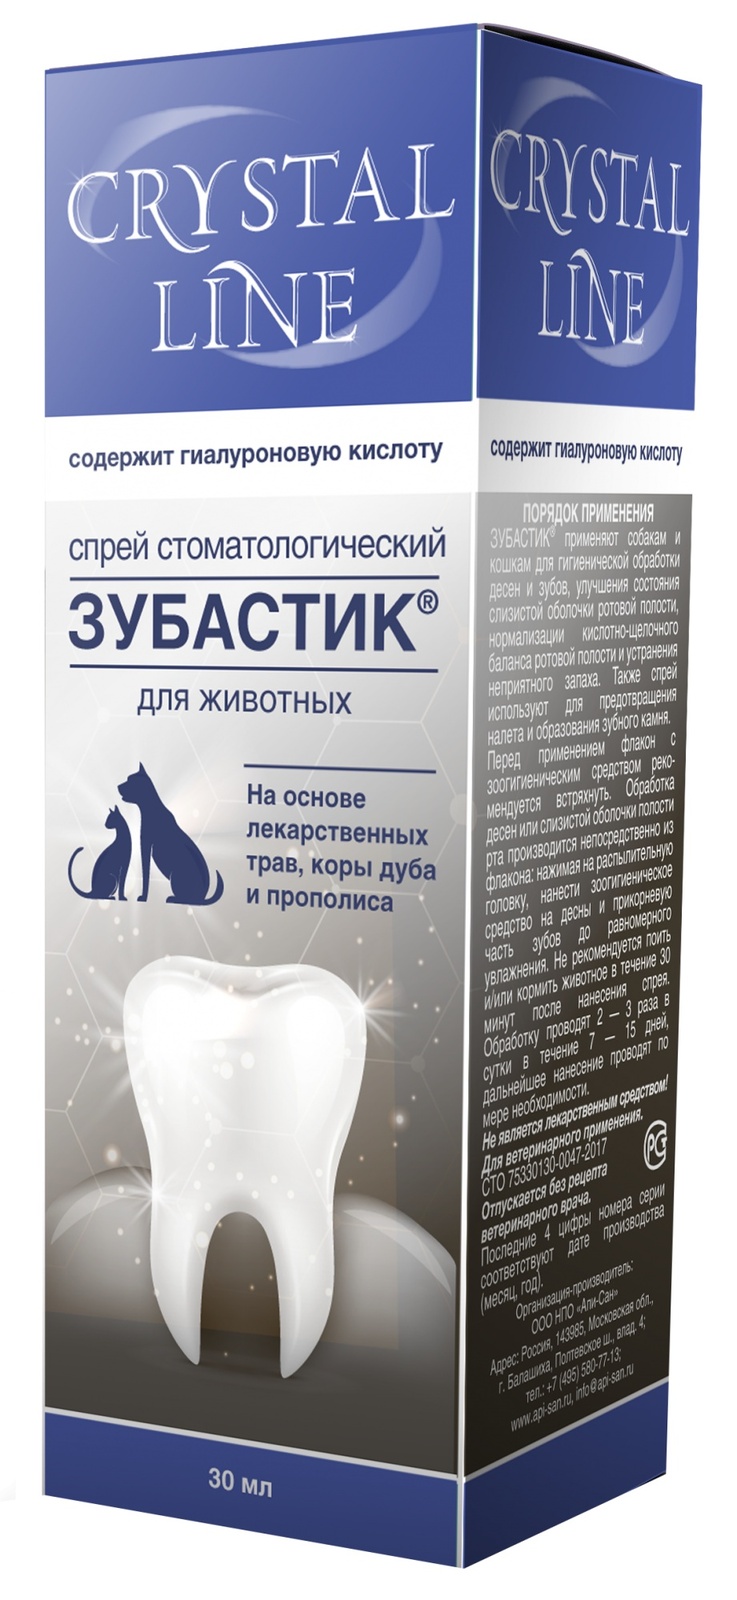 Apicenna Apicenna зубастик спрей для чистки зубов Crystal line (30 г) зубастик спрей зоогигиенический стоматологический для животных 30мл